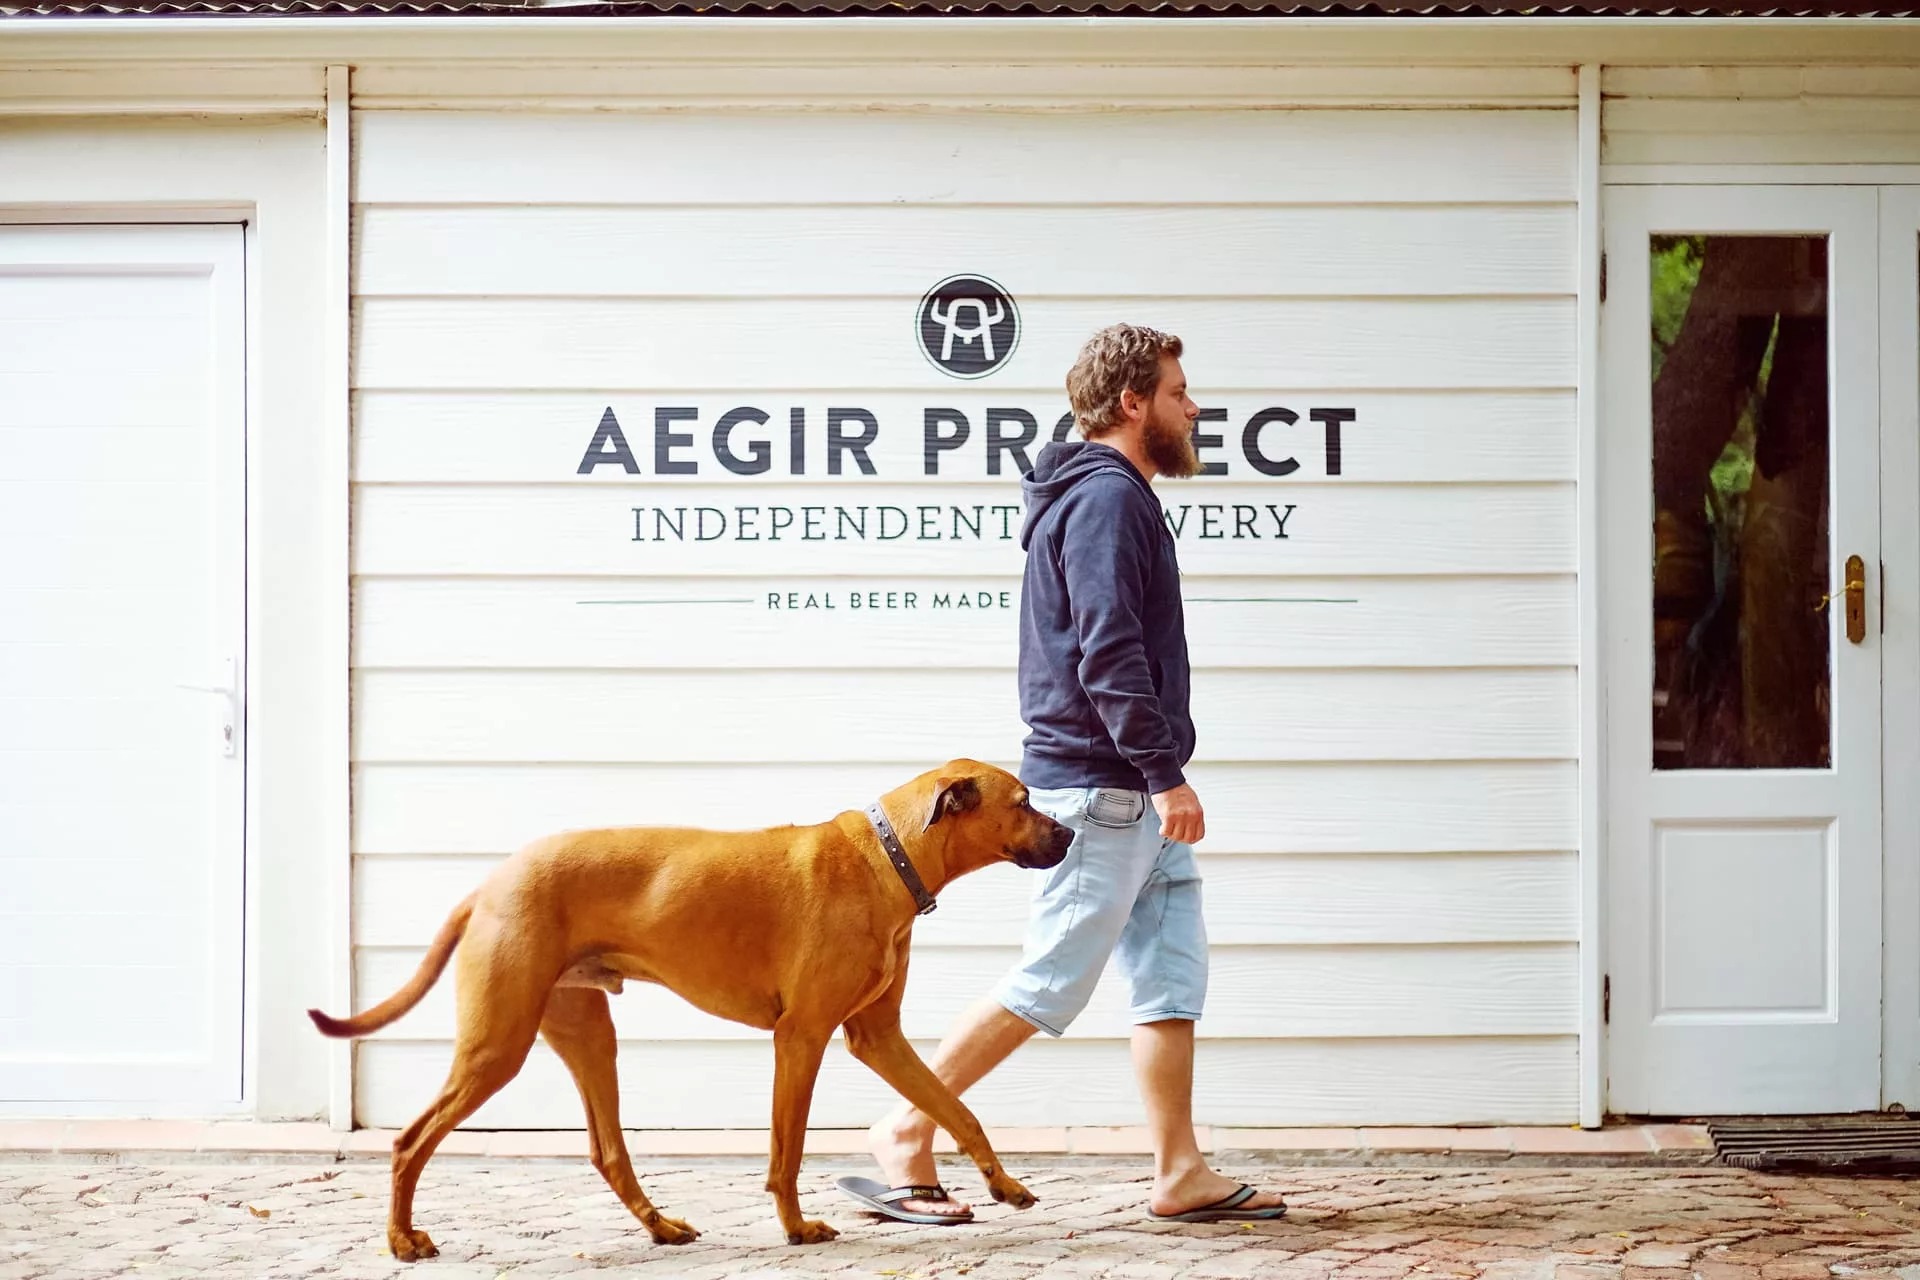 Aegir-Project-Brewery